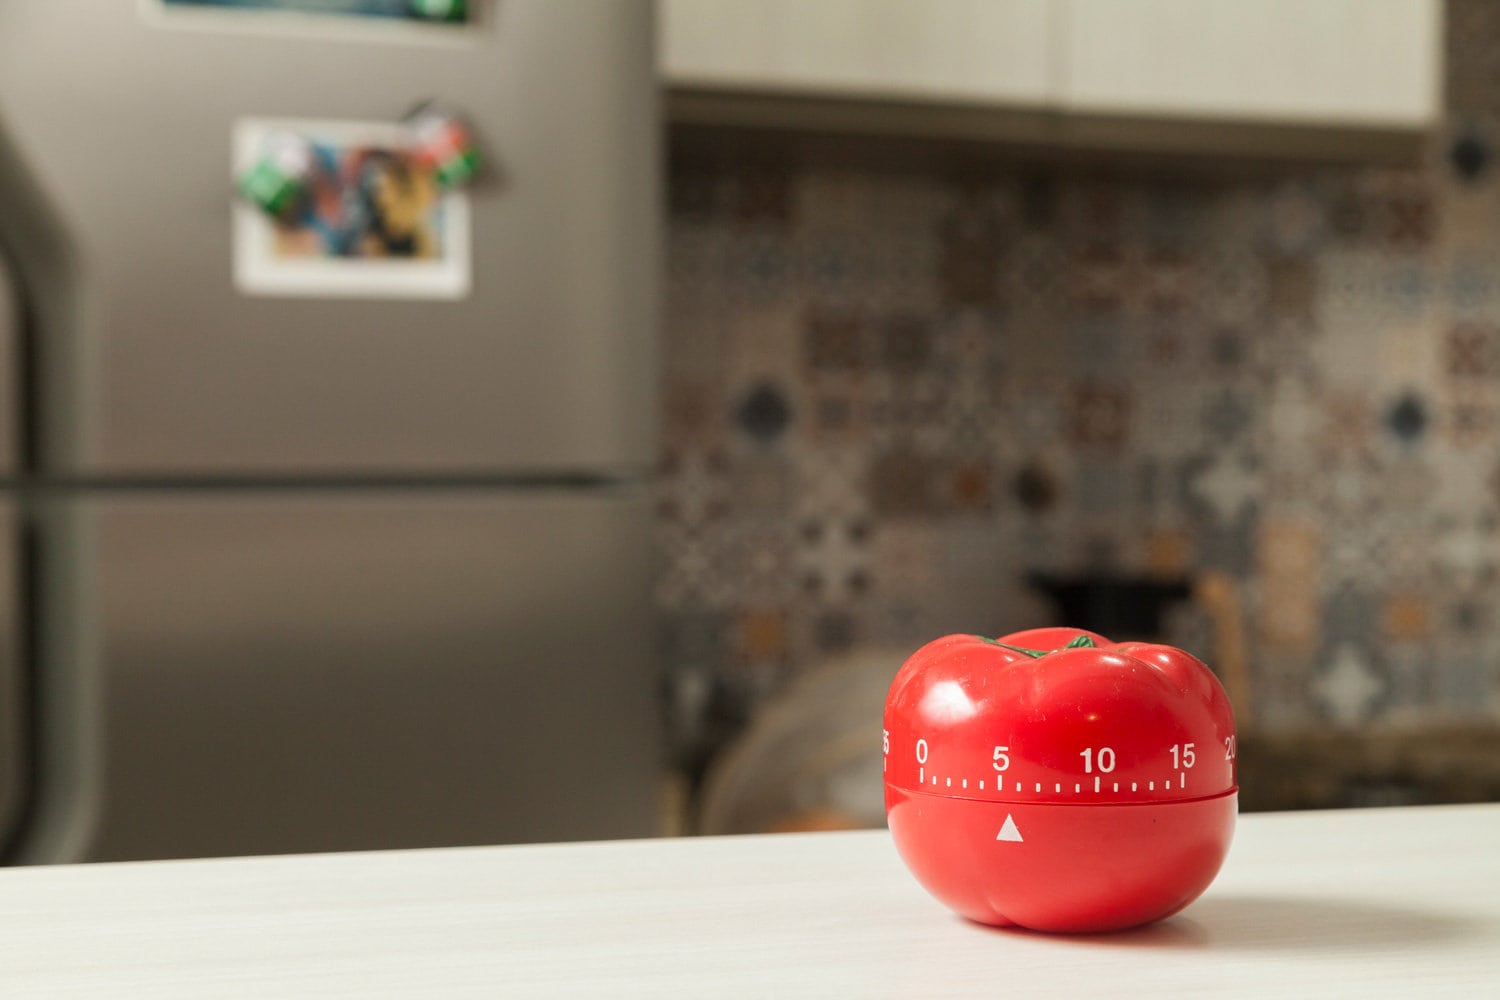 在后台红tomato-shaped厨bd手机下载房定时器和烹饪。让你知道什么时候关掉炉子和食物准备好了。巴西菜。bd手机下载厨房的概念。家用电器的概念。